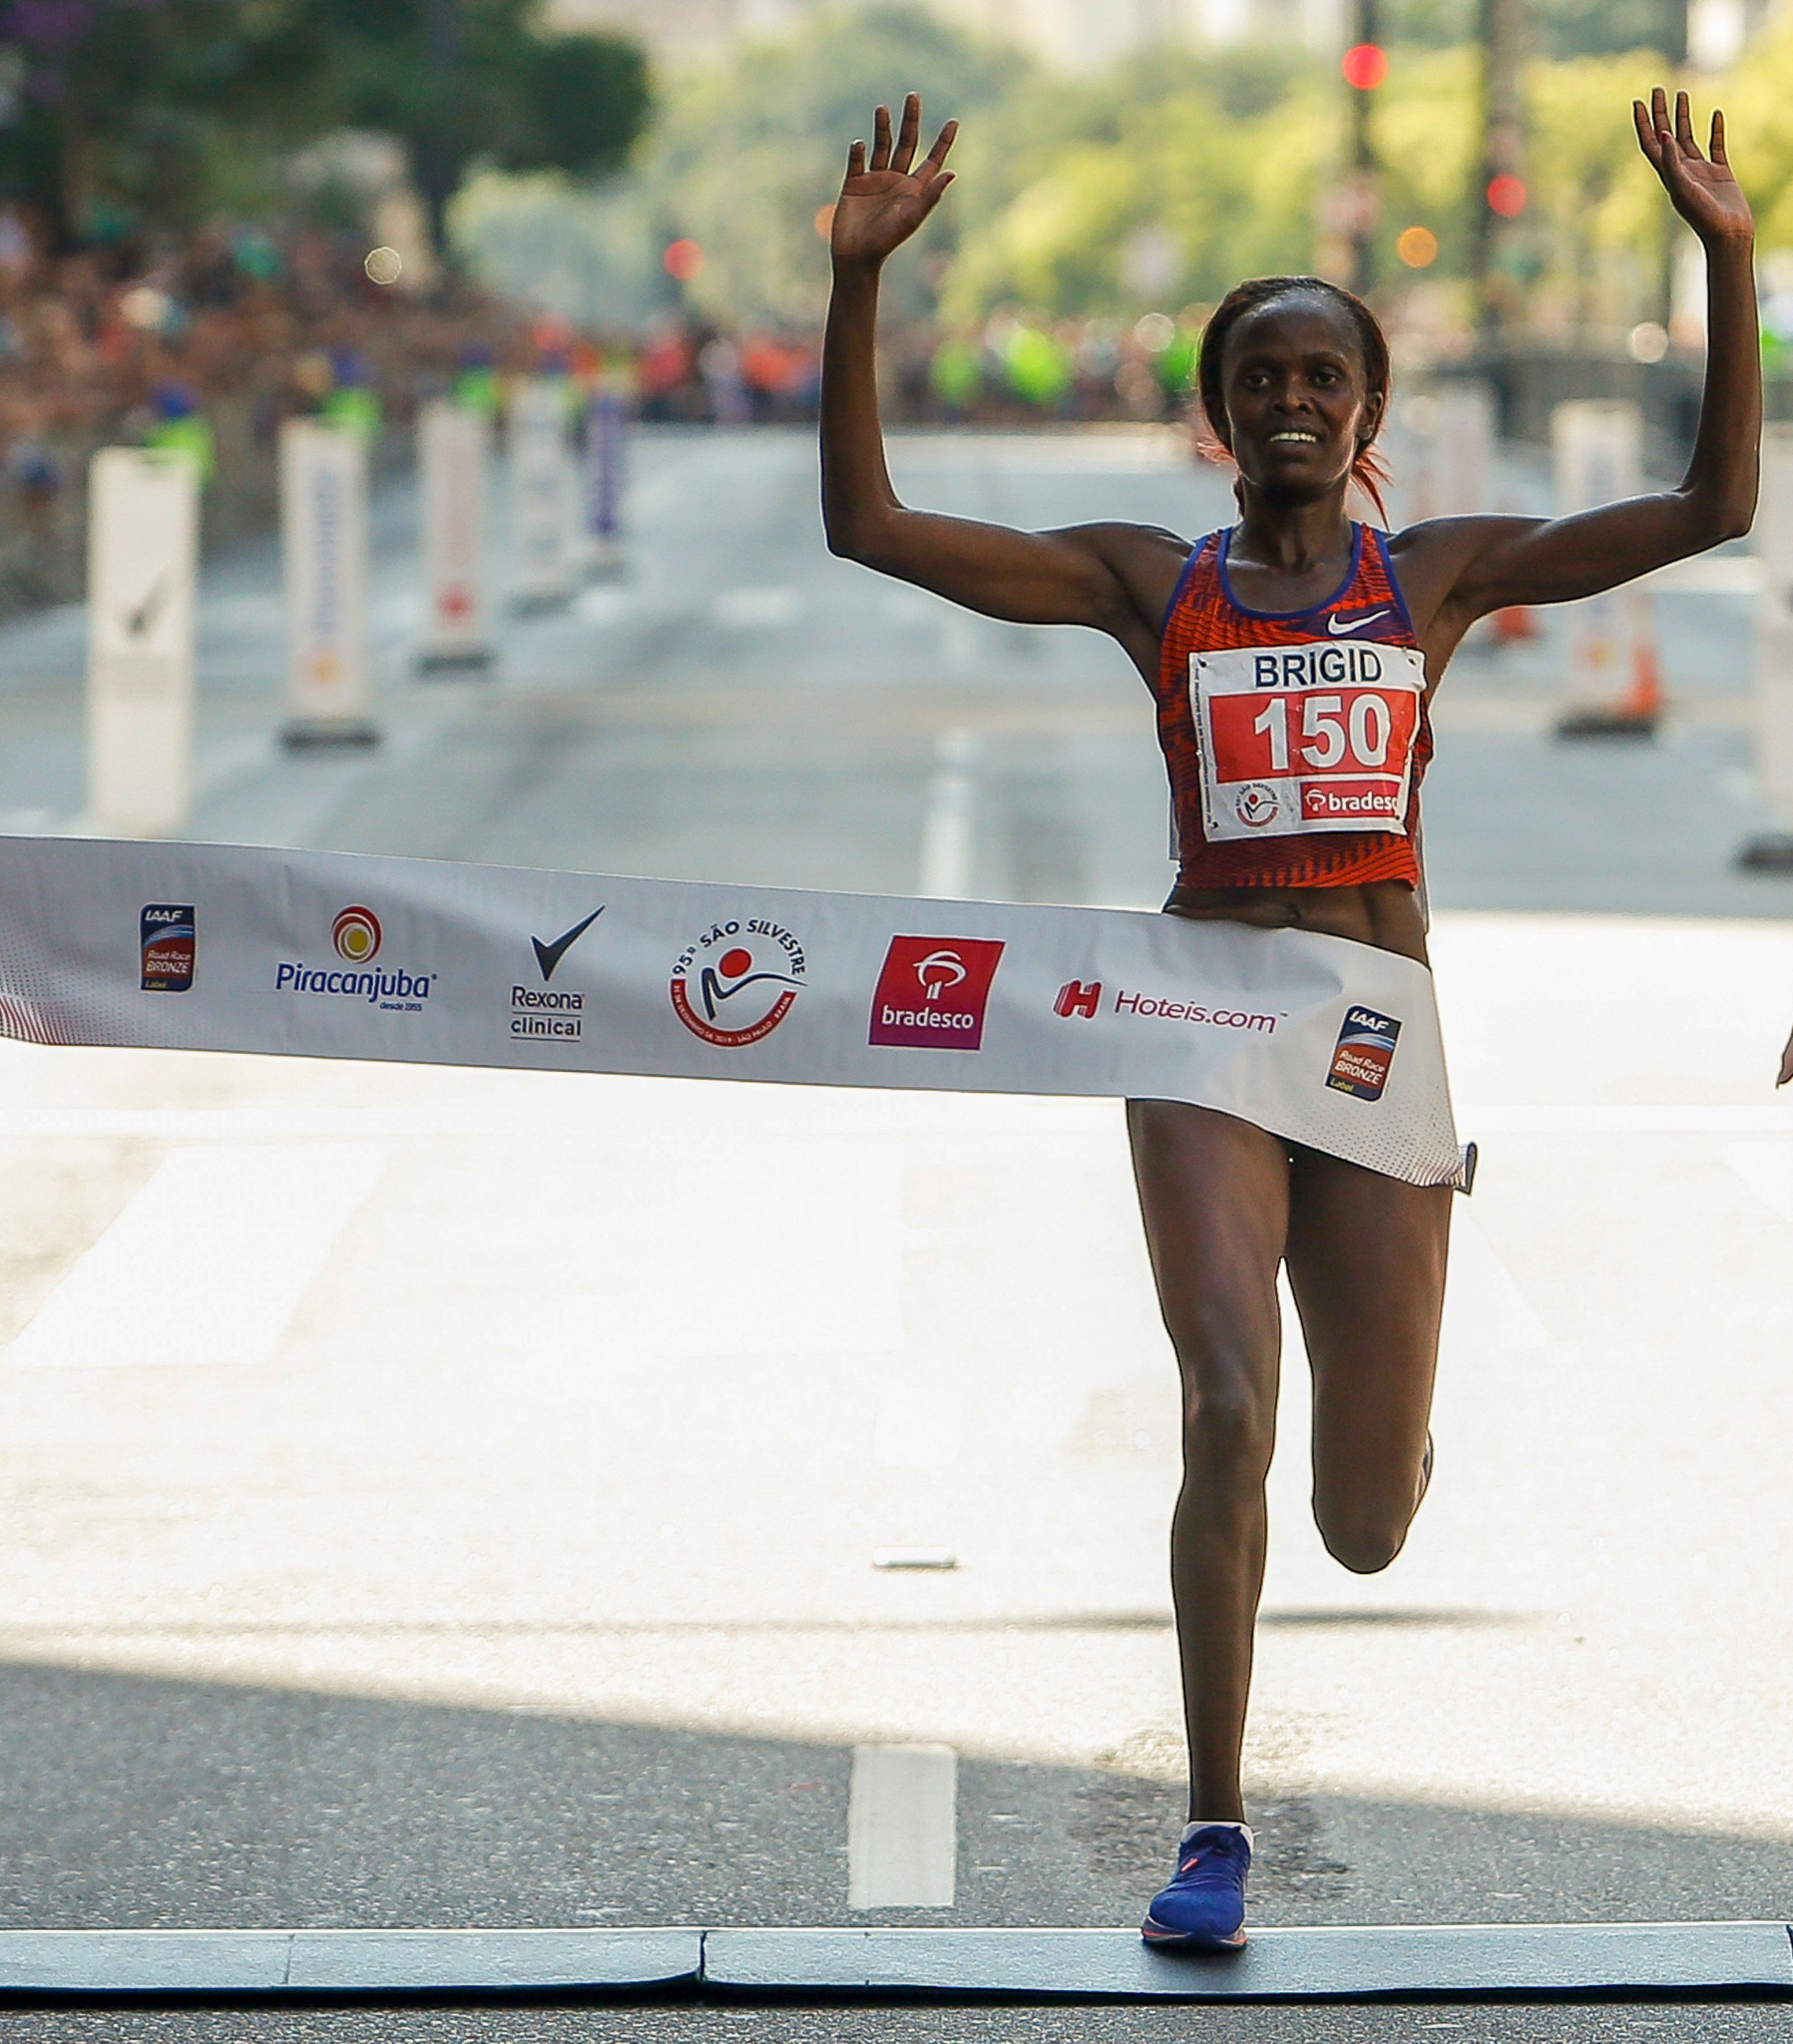 Women's marathon world record holder Brigid Kosgei will also compete at Tokyo 2020 ©Getty Images